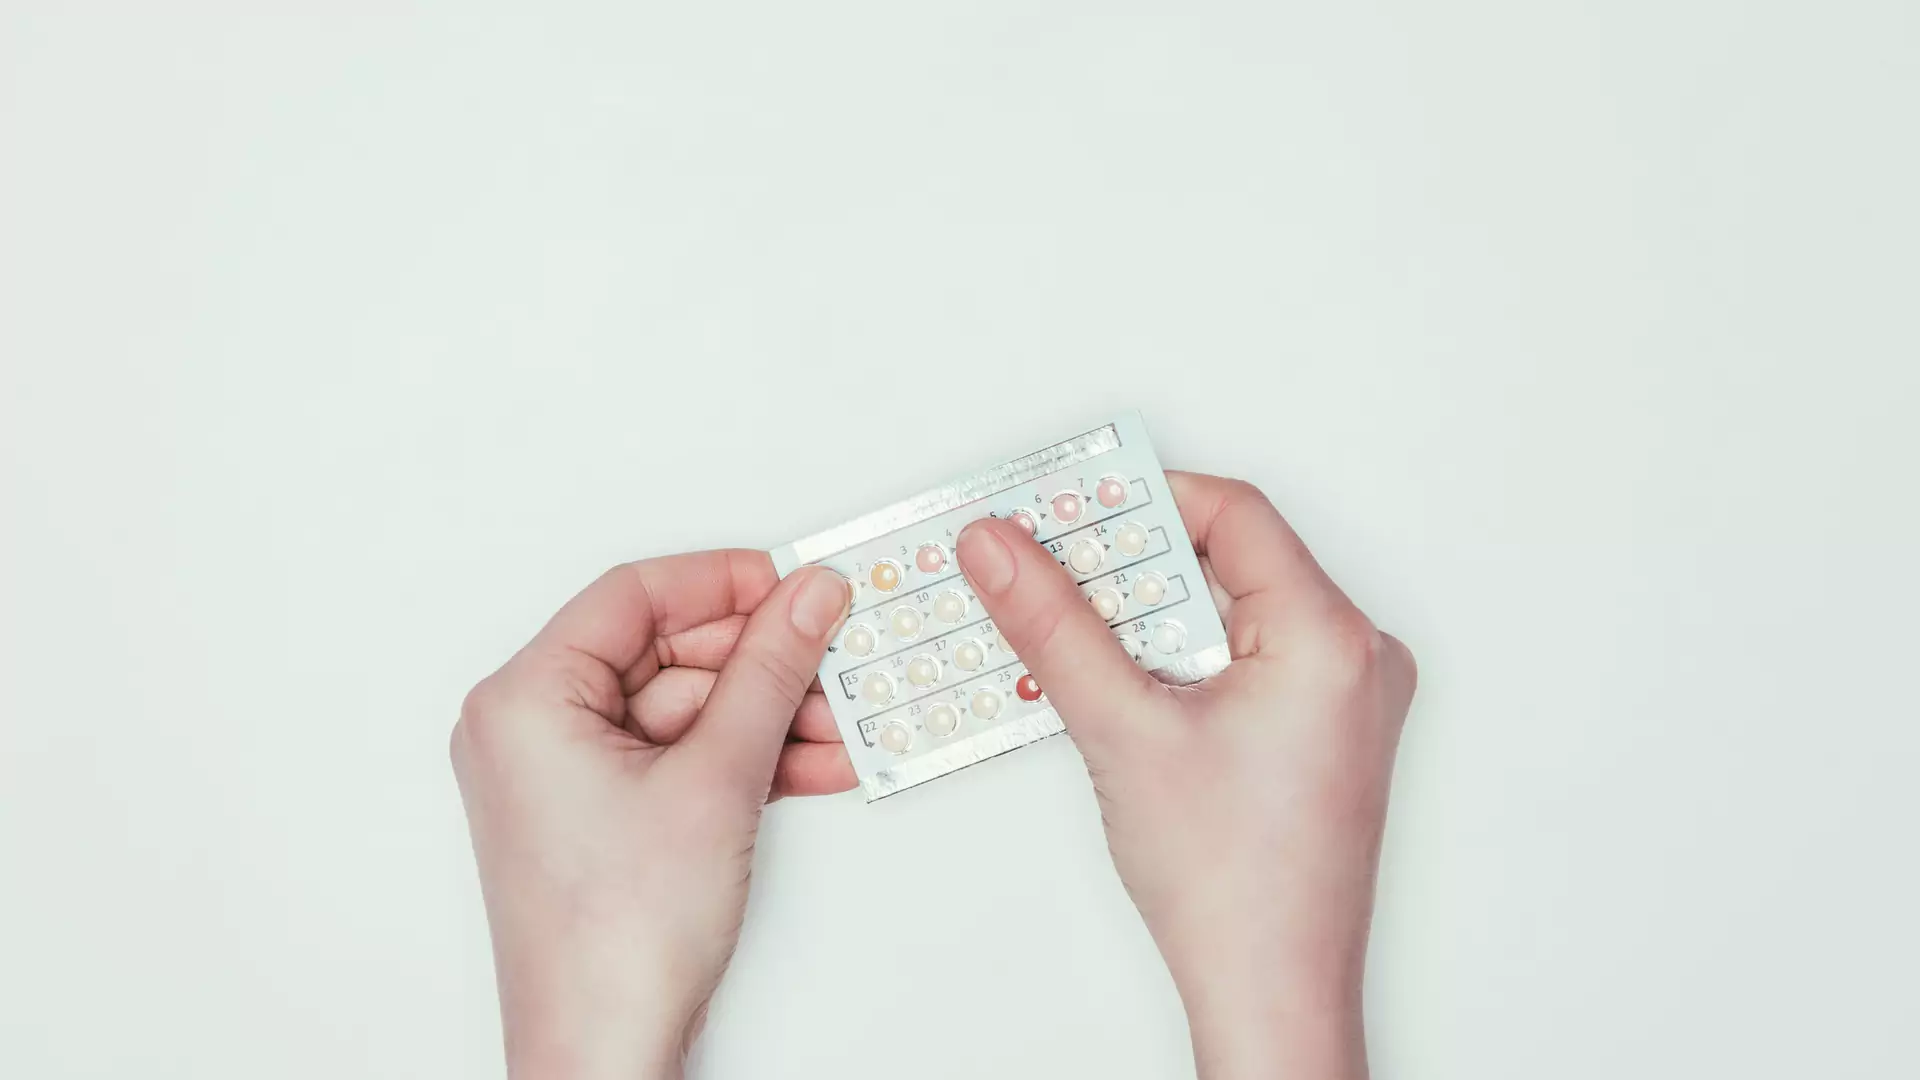 Tabletki antykoncepcyjne mogą wpływać na to, że kobiety wybierają nieodpowiednich partnerów